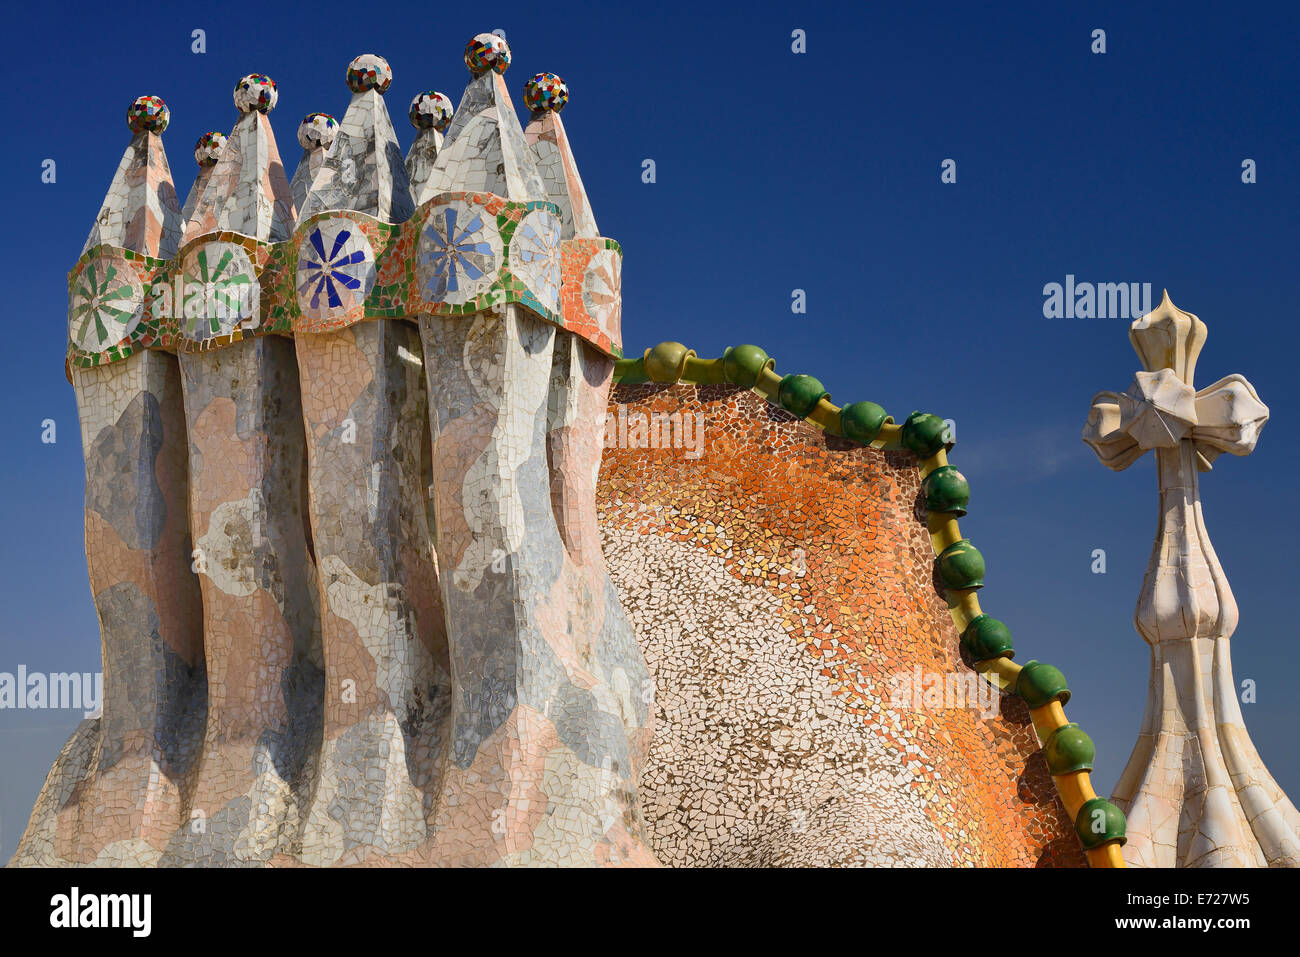 Espagne, Catalogne, Barcelone, Antoni Casa Batllo Gaudis colorés pots cheminée construction sur le toit-terrasse avec les quatre croix armés. inclluded aussi Banque D'Images